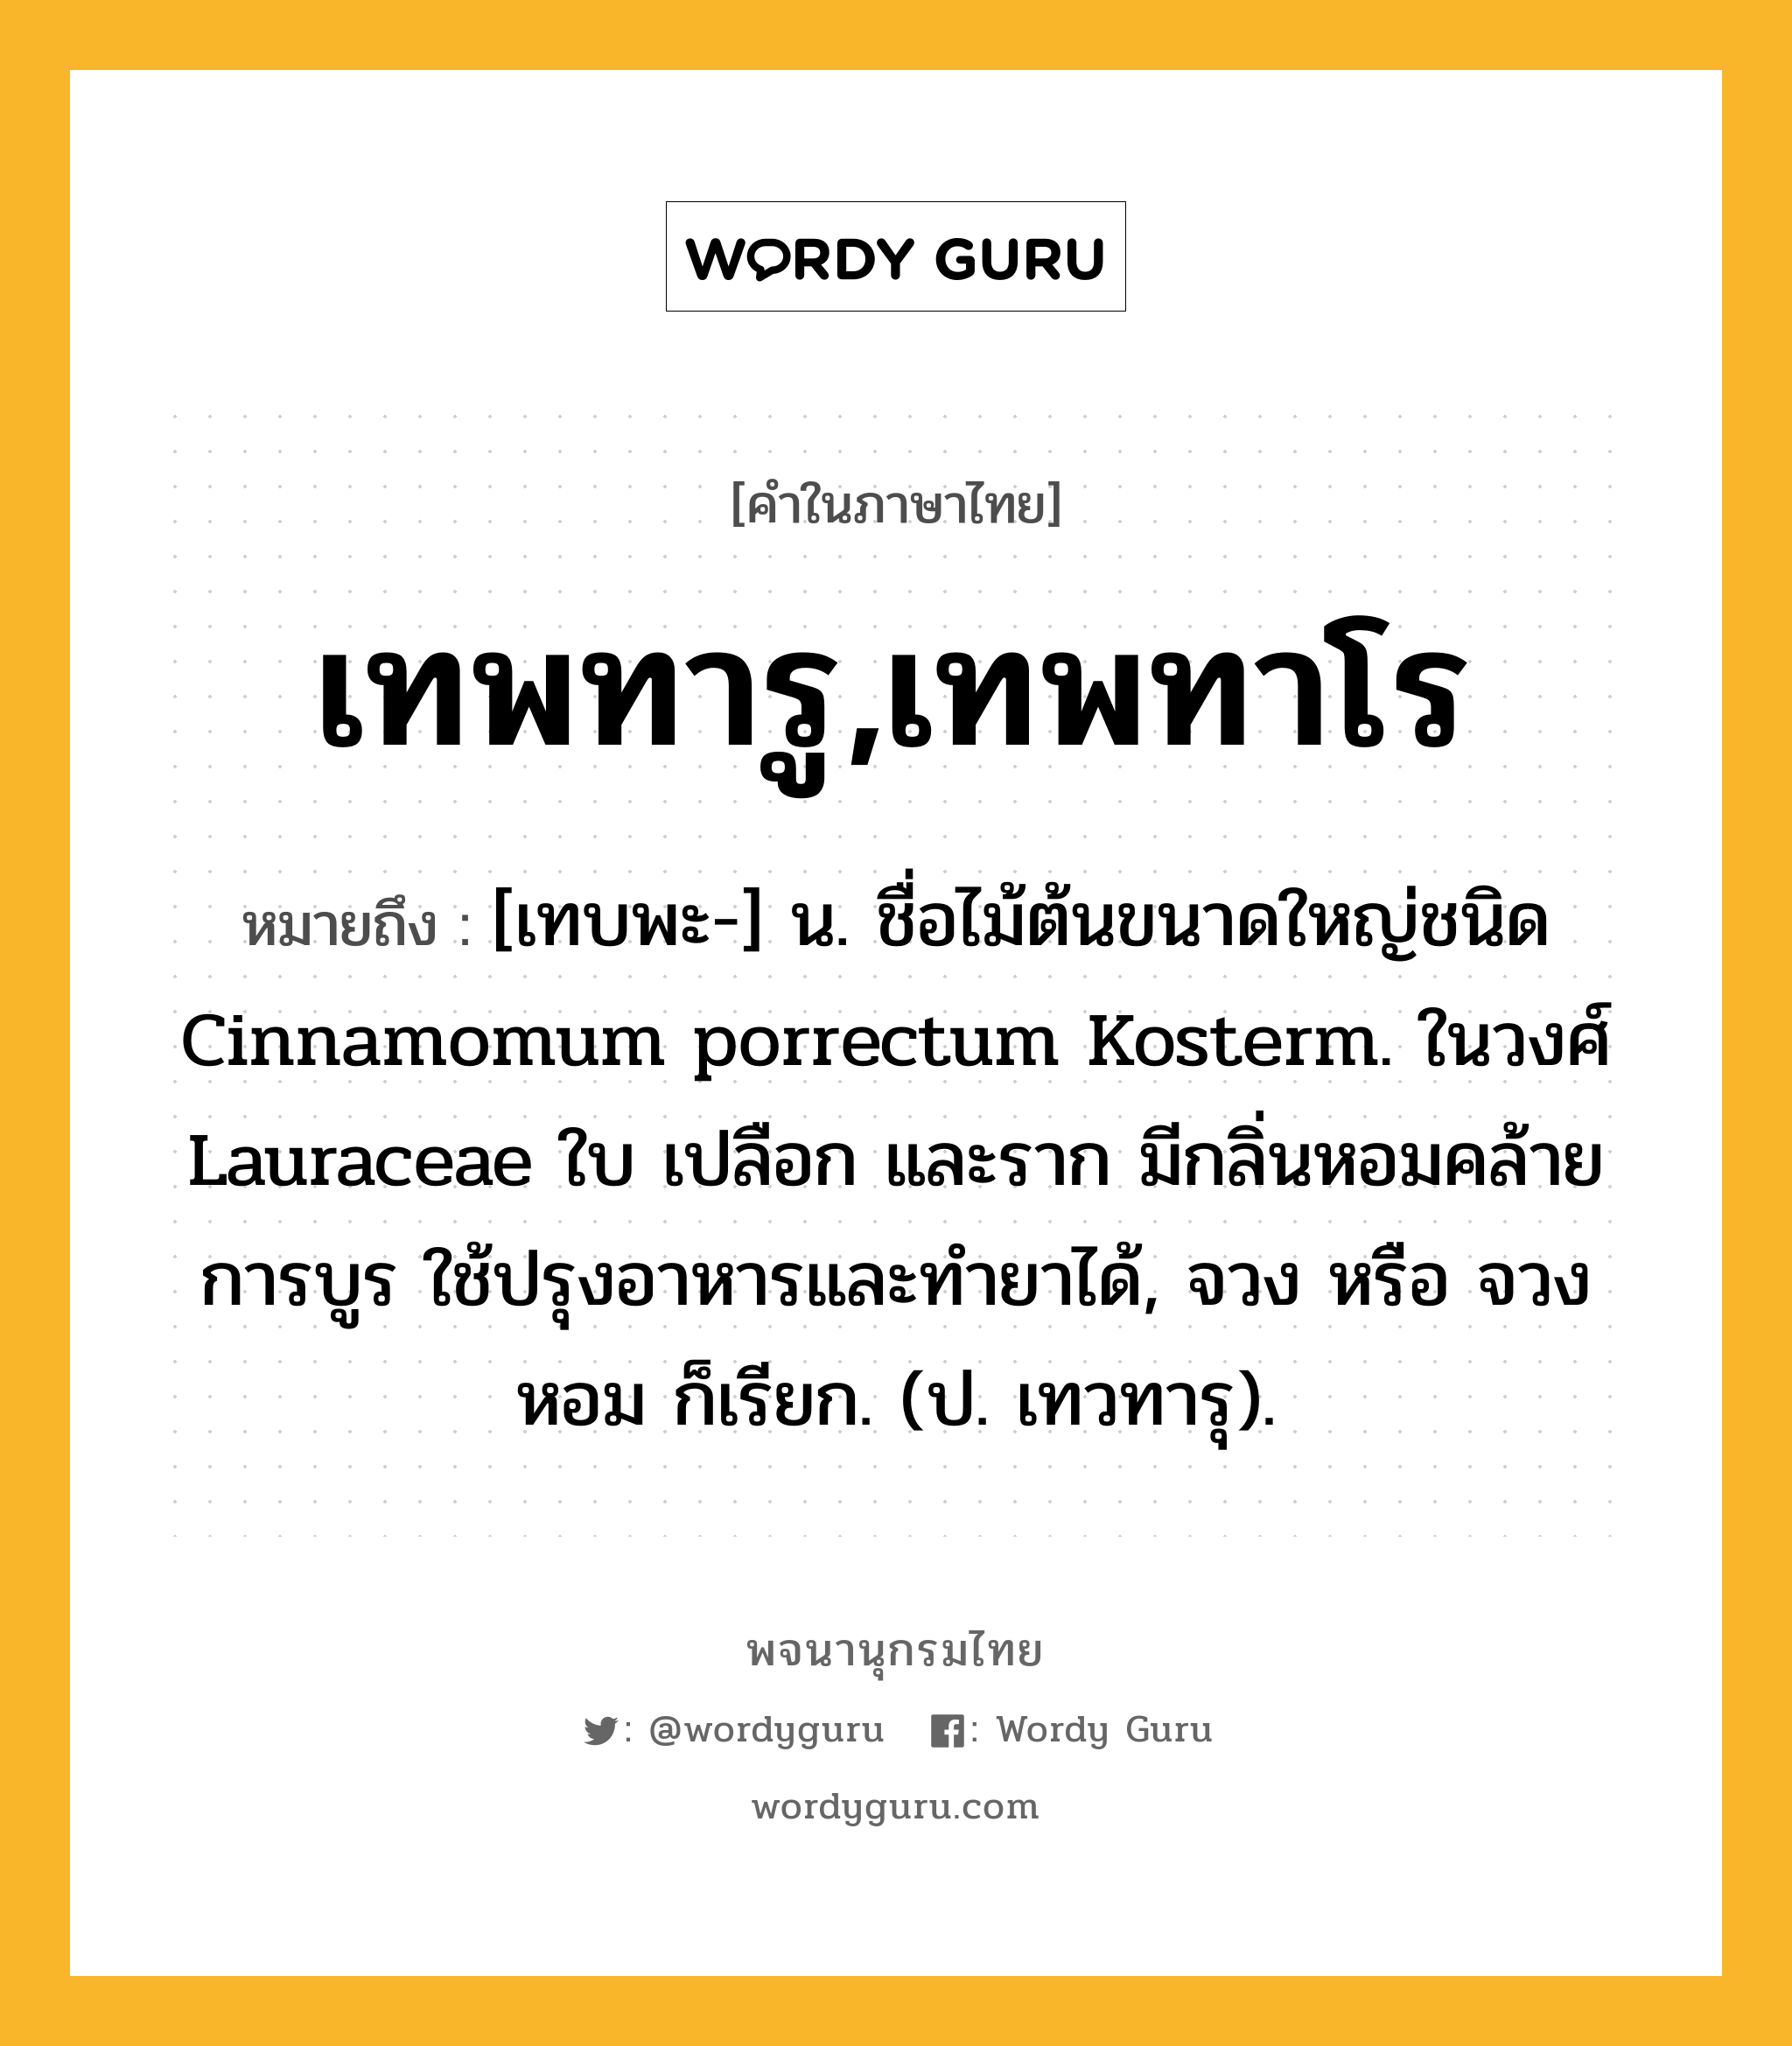 เทพทารู,เทพทาโร หมายถึงอะไร?, คำในภาษาไทย เทพทารู,เทพทาโร หมายถึง [เทบพะ-] น. ชื่อไม้ต้นขนาดใหญ่ชนิด Cinnamomum porrectum Kosterm. ในวงศ์ Lauraceae ใบ เปลือก และราก มีกลิ่นหอมคล้ายการบูร ใช้ปรุงอาหารและทํายาได้, จวง หรือ จวงหอม ก็เรียก. (ป. เทวทารุ).